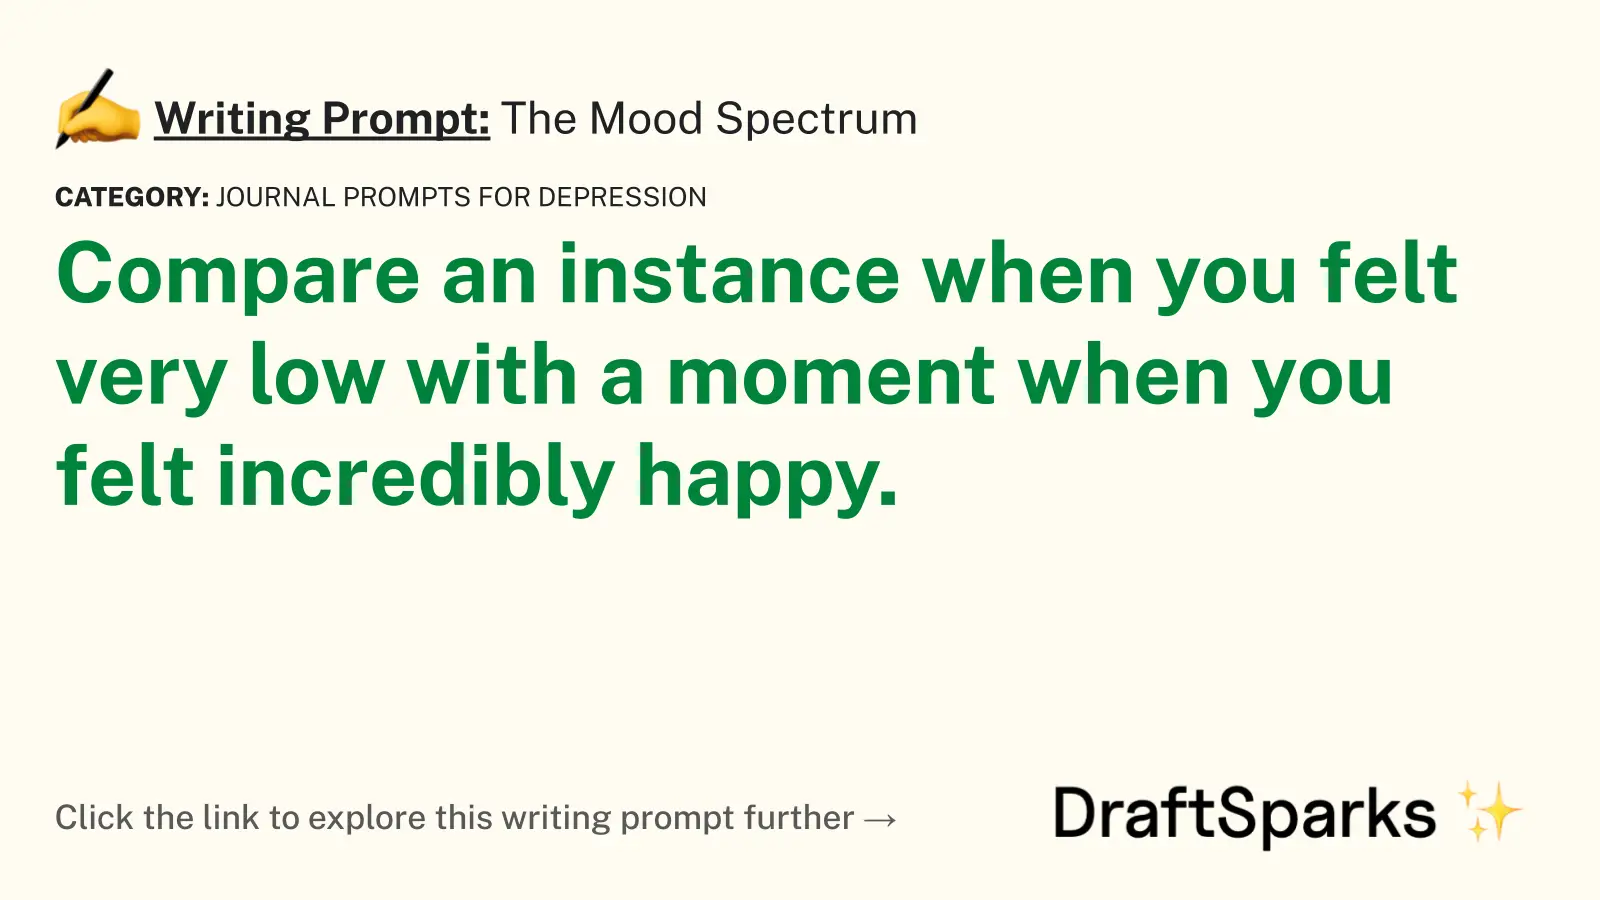 The Mood Spectrum